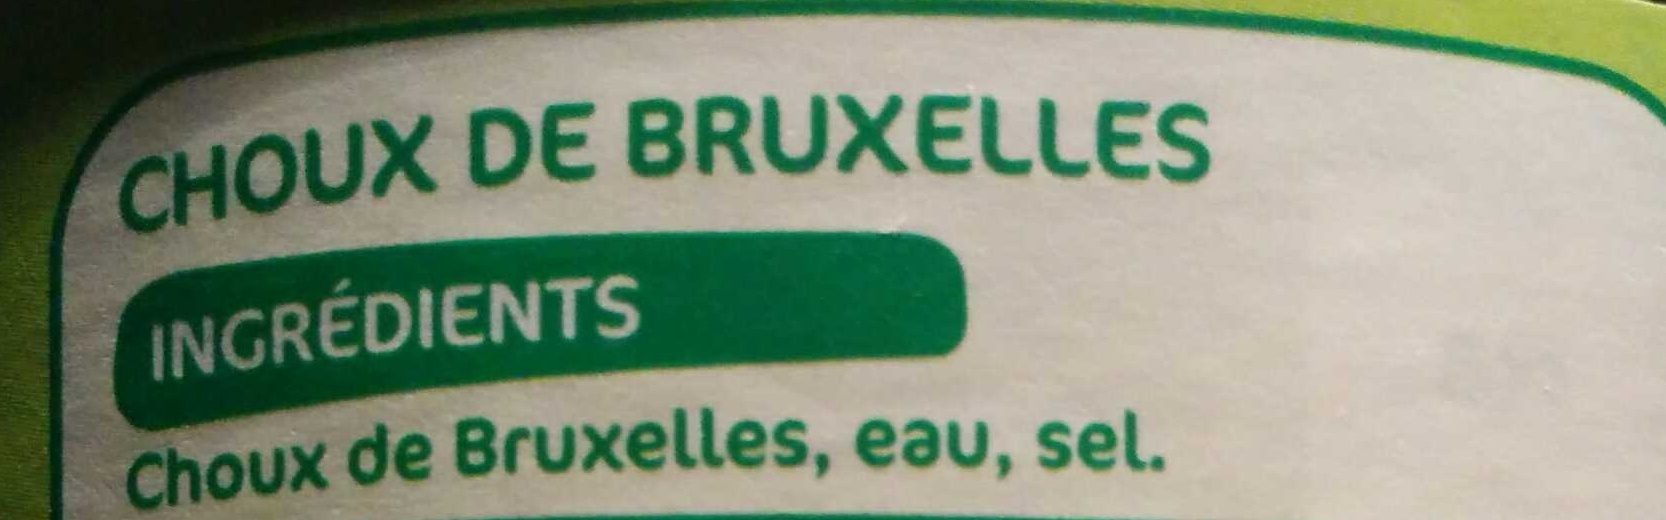 Choux de Bruxelles - Ingredienser - fr